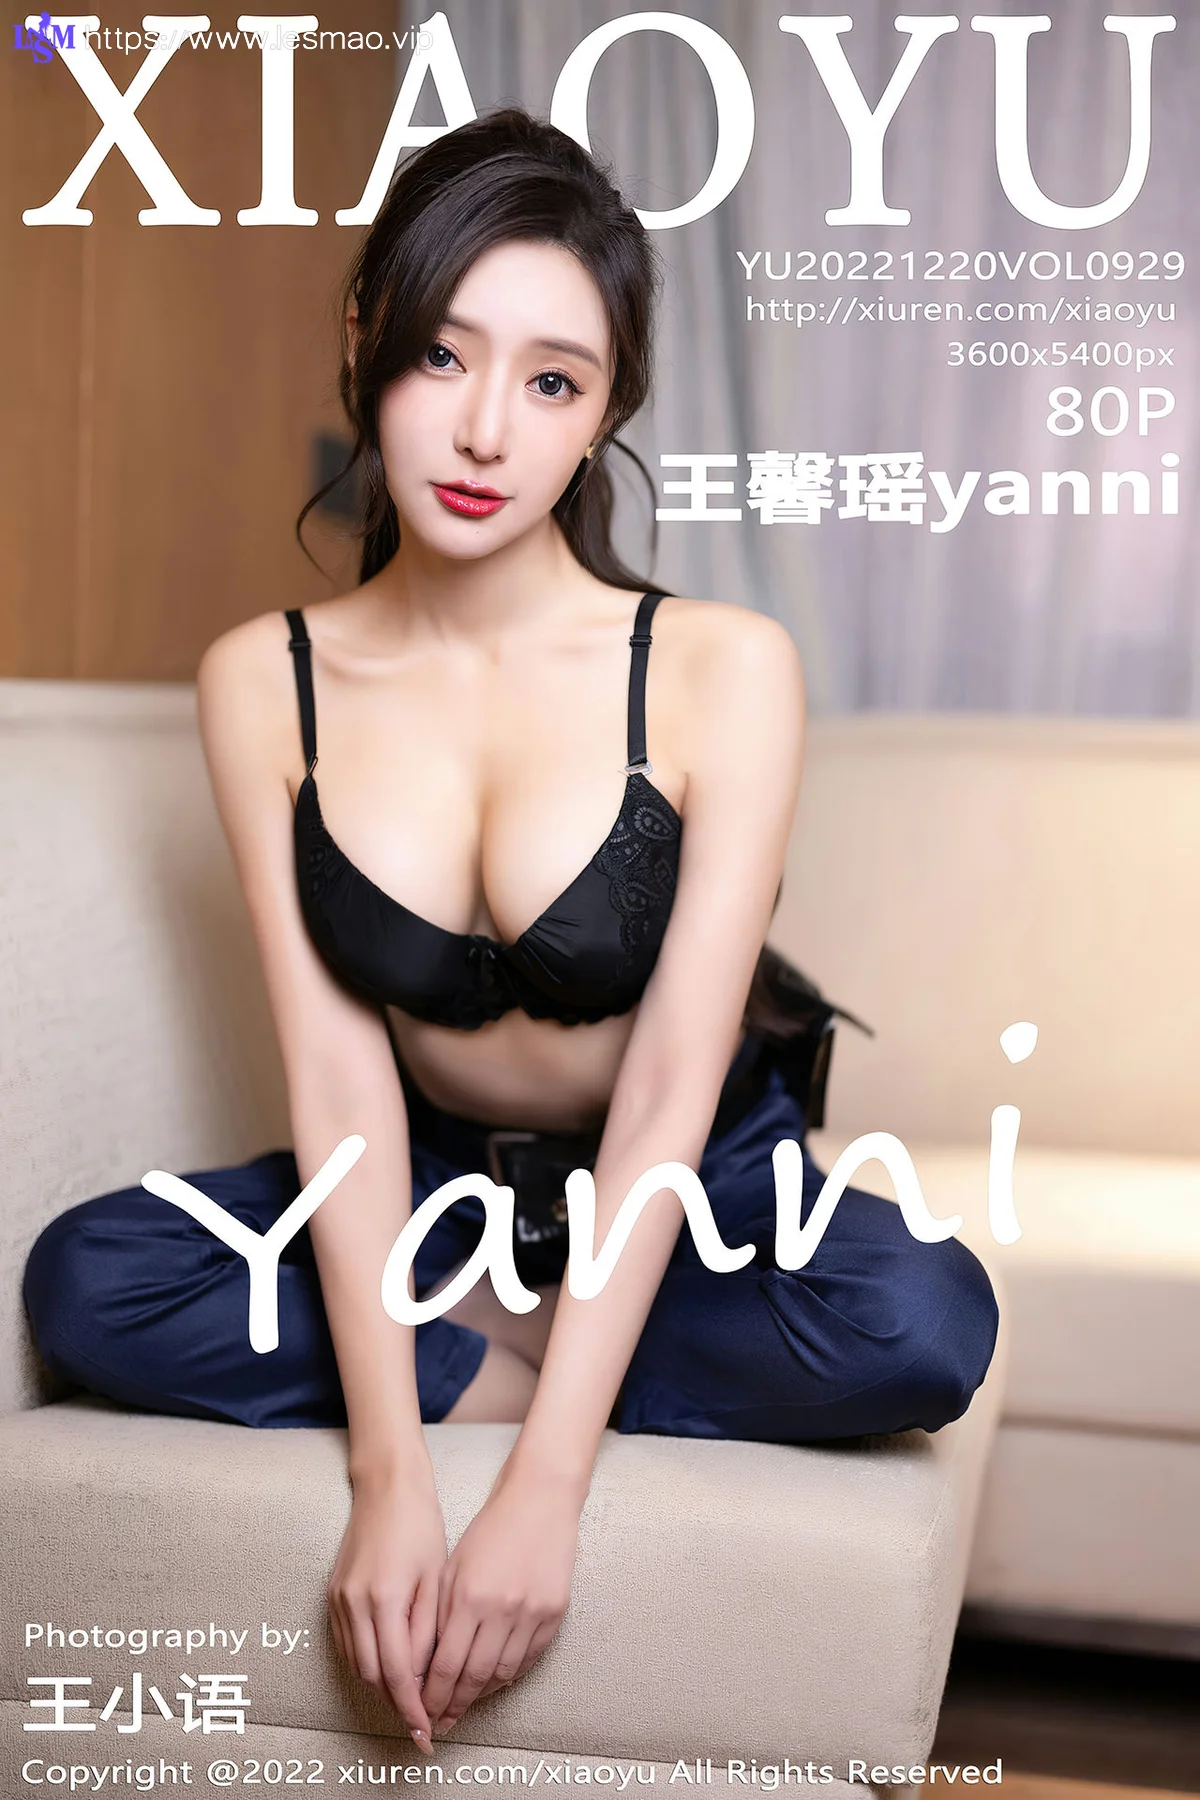 XIAOYU  语画界 Vol.929  王馨瑶yanni 女警官制服制服诱惑 - 1